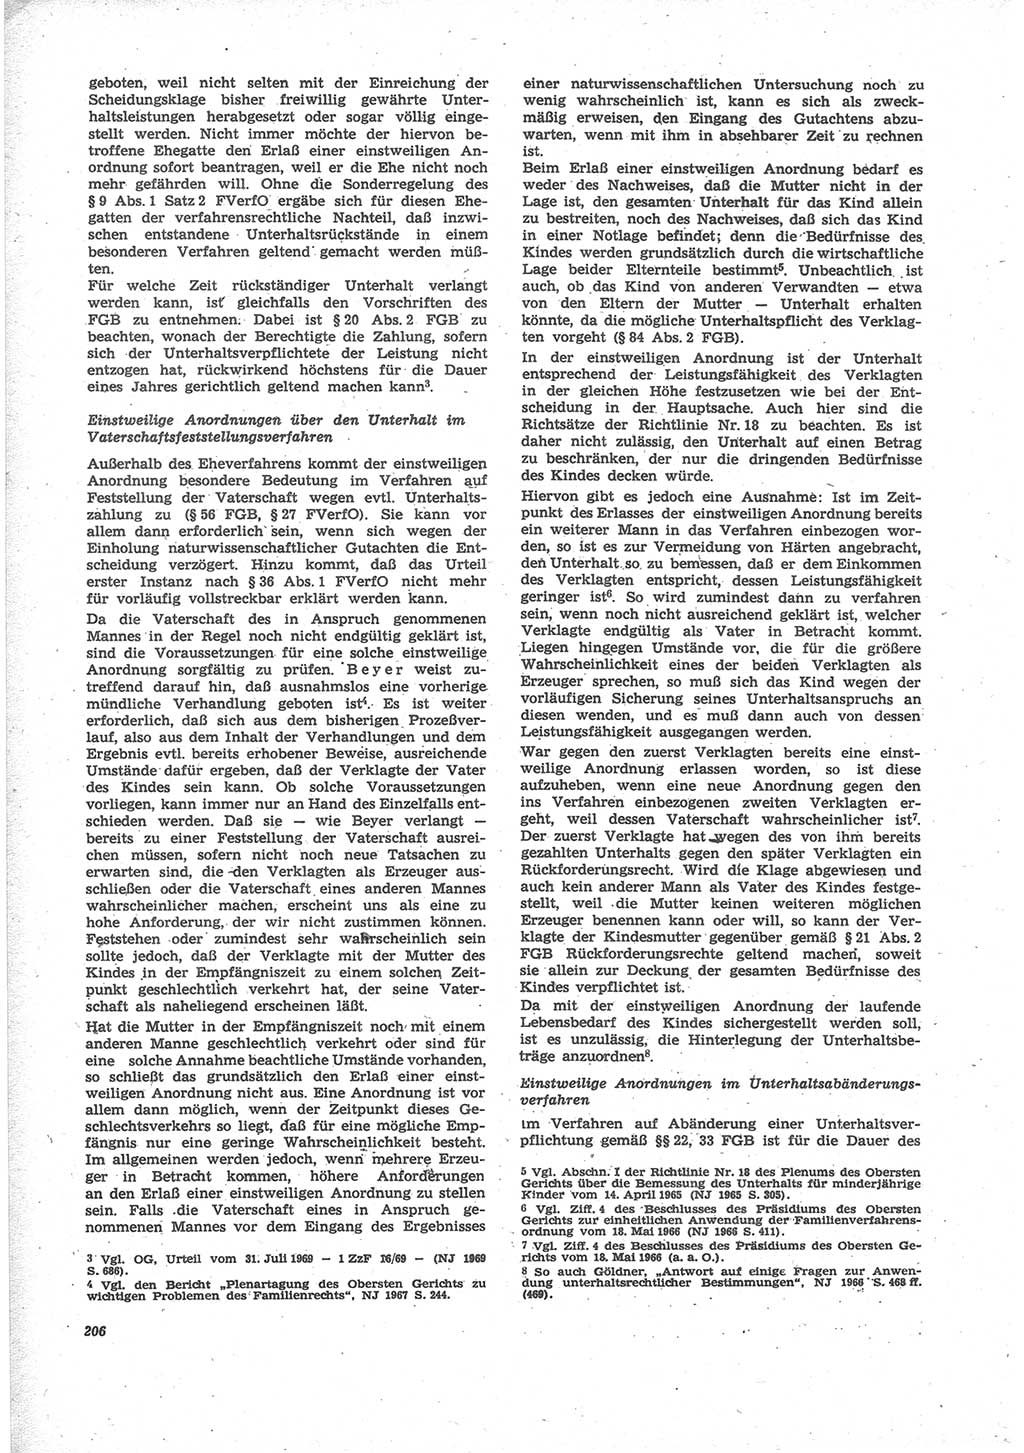 Neue Justiz (NJ), Zeitschrift für Recht und Rechtswissenschaft [Deutsche Demokratische Republik (DDR)], 24. Jahrgang 1970, Seite 206 (NJ DDR 1970, S. 206)